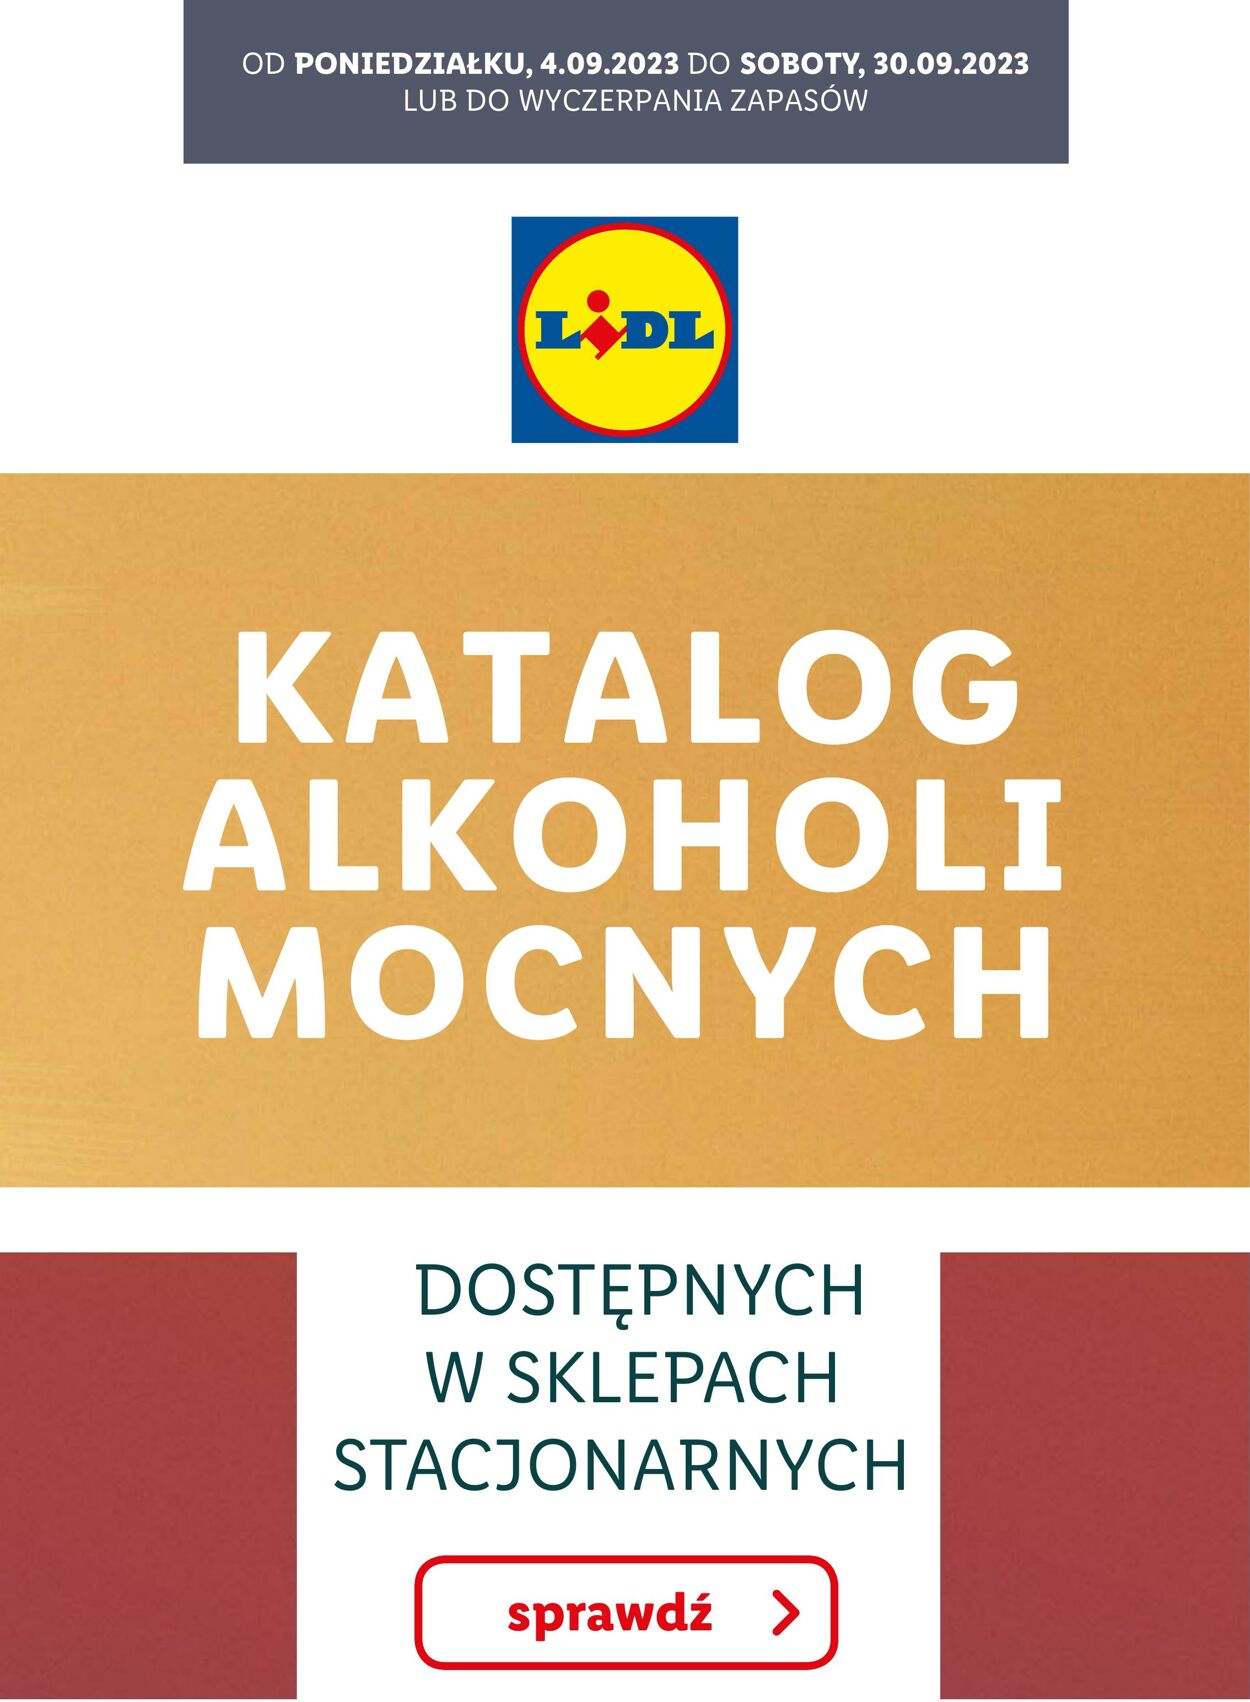 Gazetka Lidl - KATALOG ALKOHOLI MOCNYCH 4 wrz, 2023 - 30 wrz, 2023